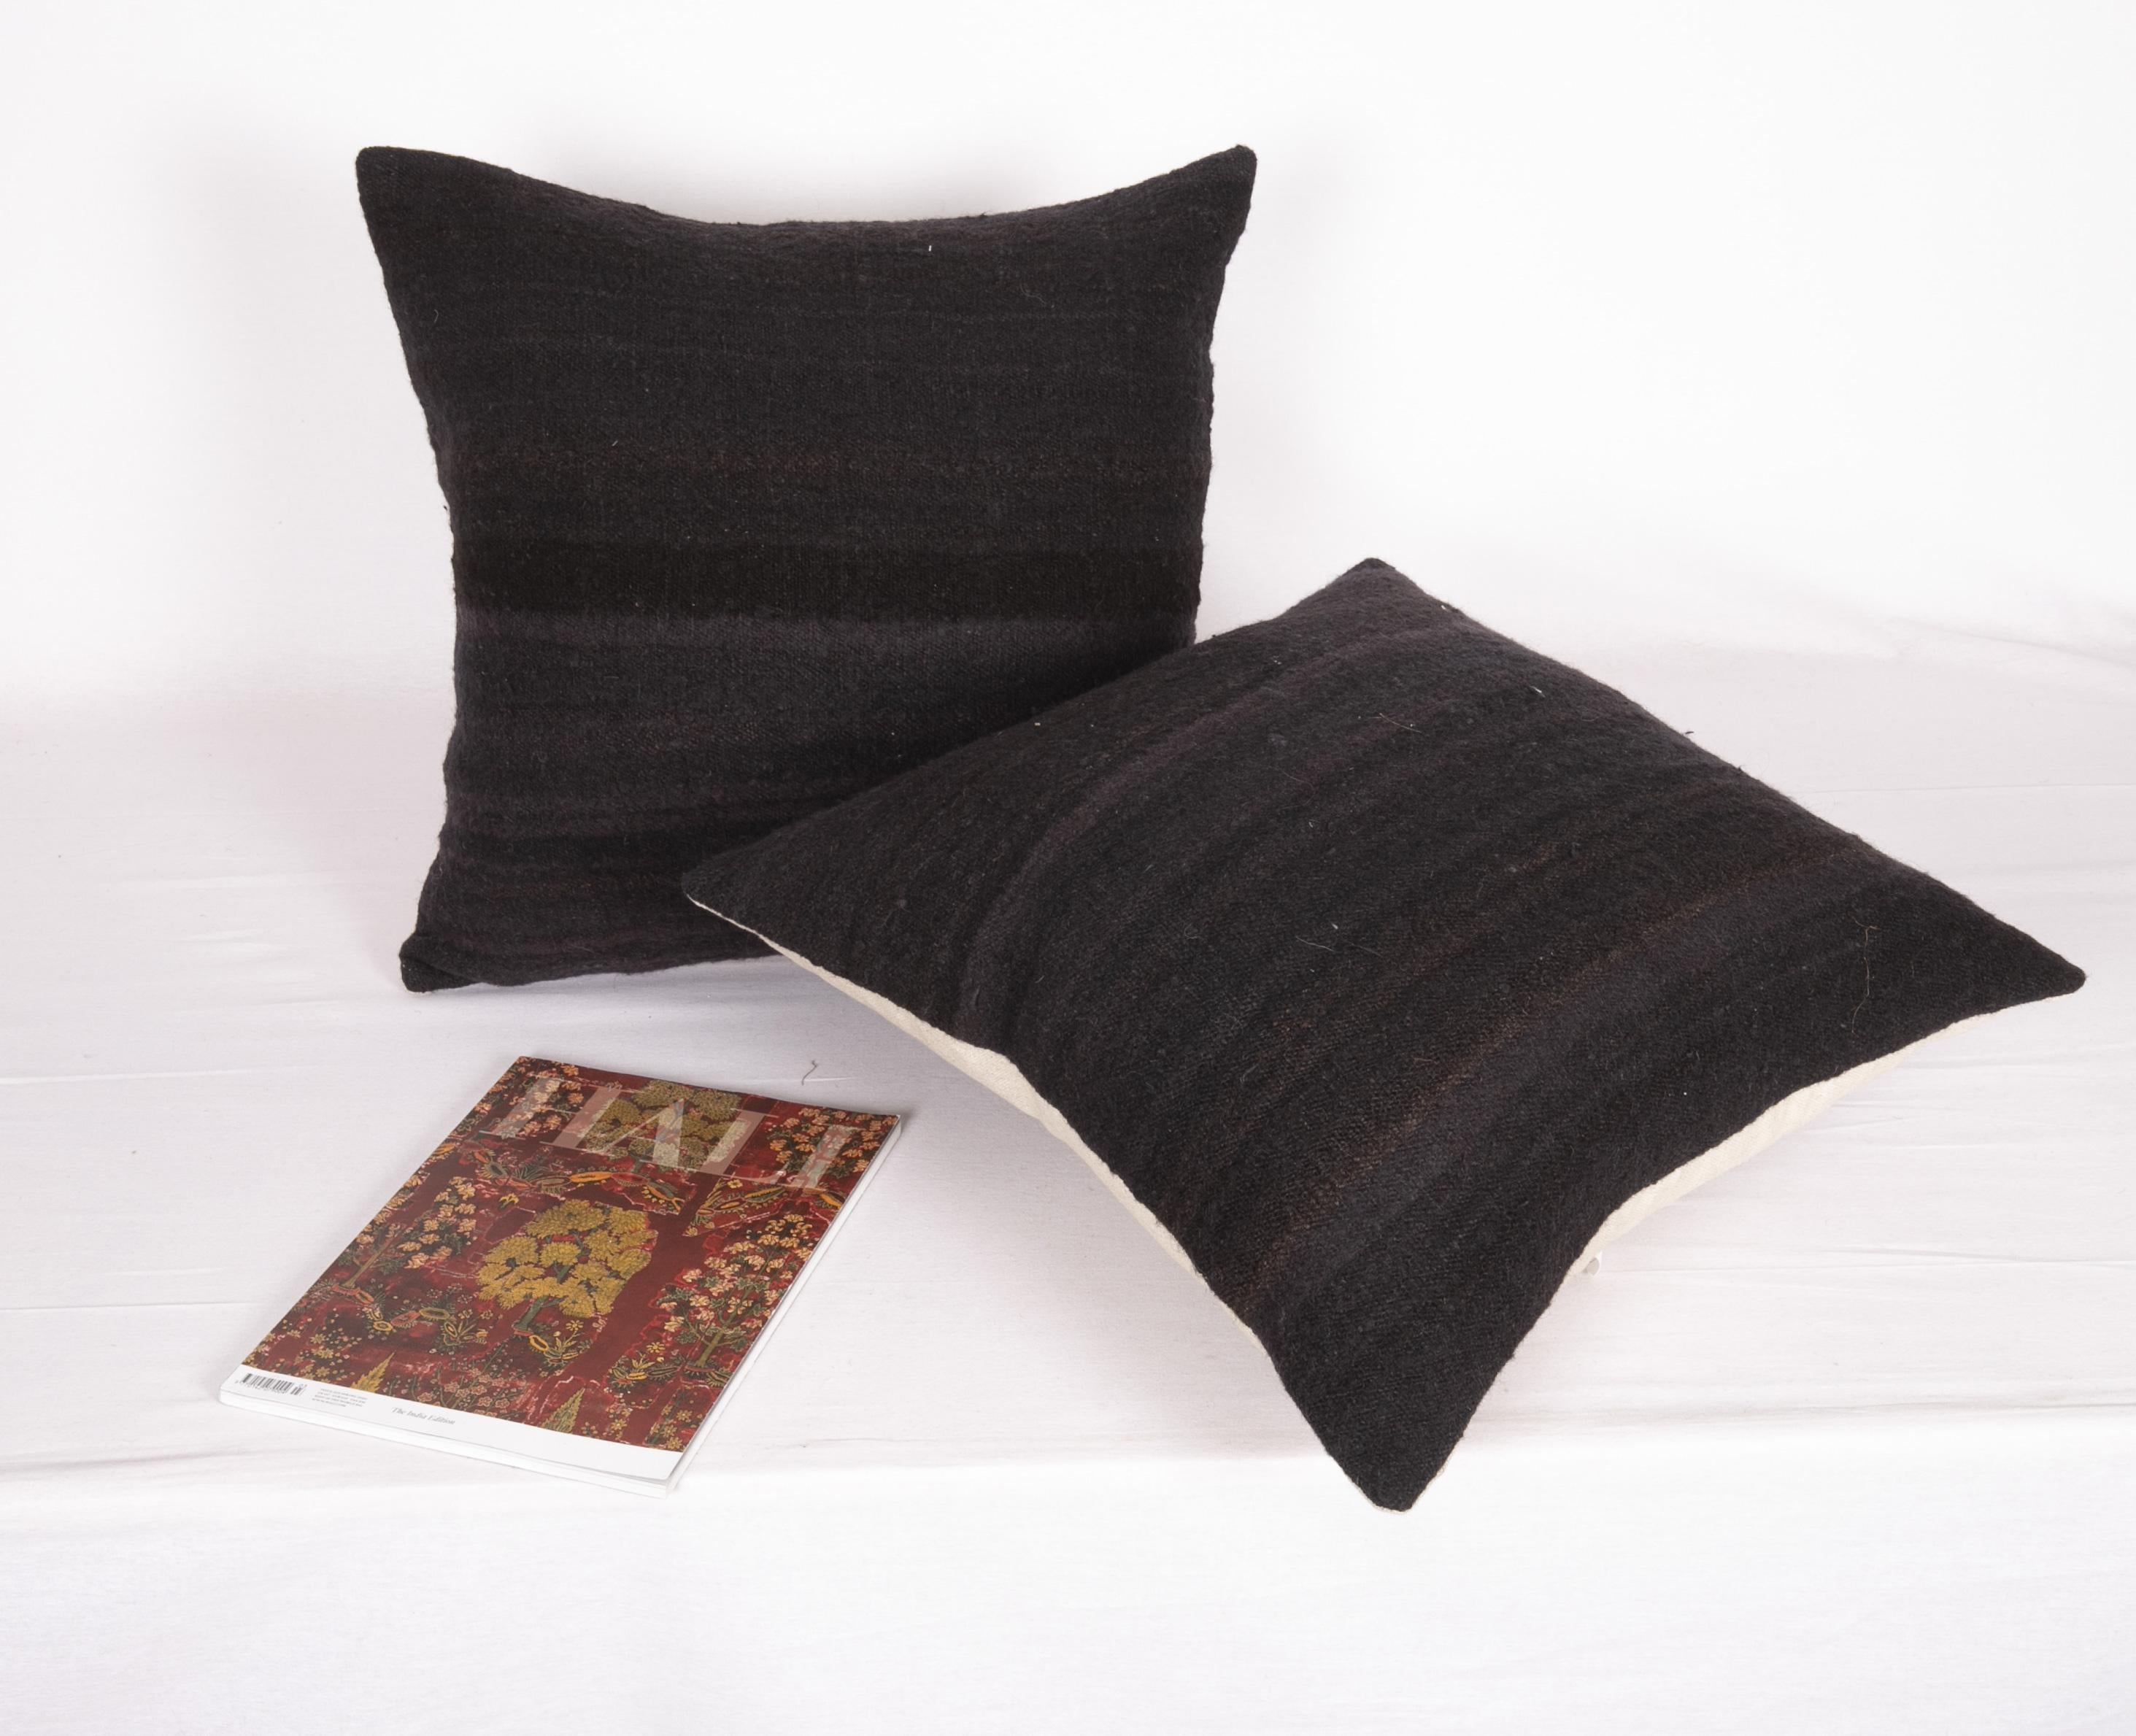 Turkish Black Pillow Covers made from a Mıd 20th C. Turkısh Kilim